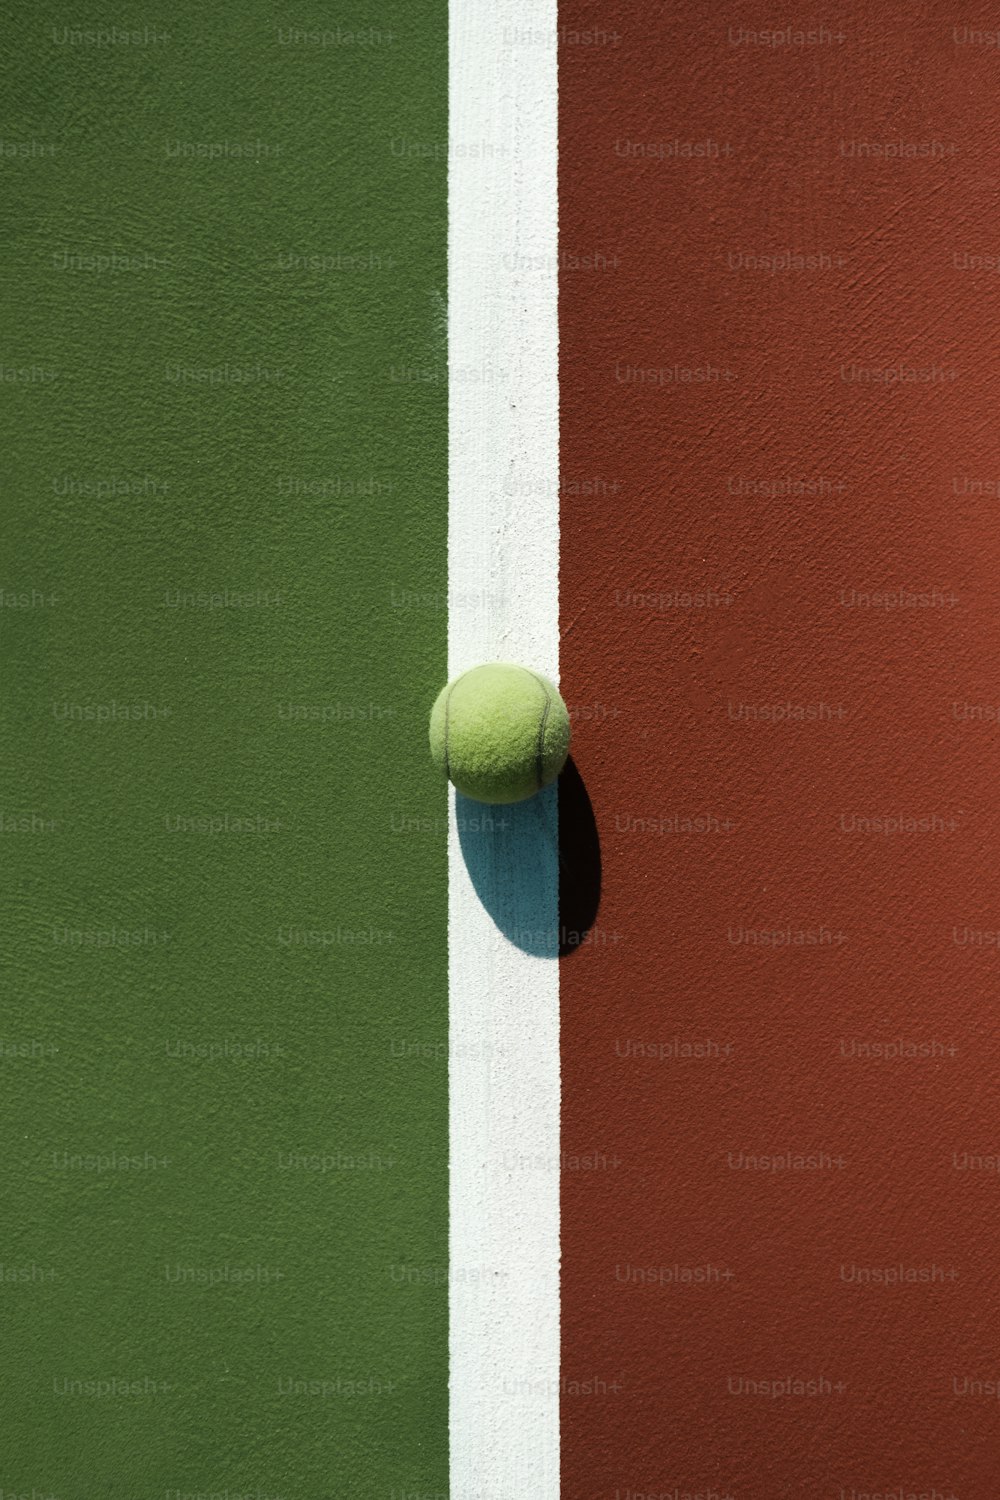 Una pelota de tenis sentada al costado de una cancha de tenis